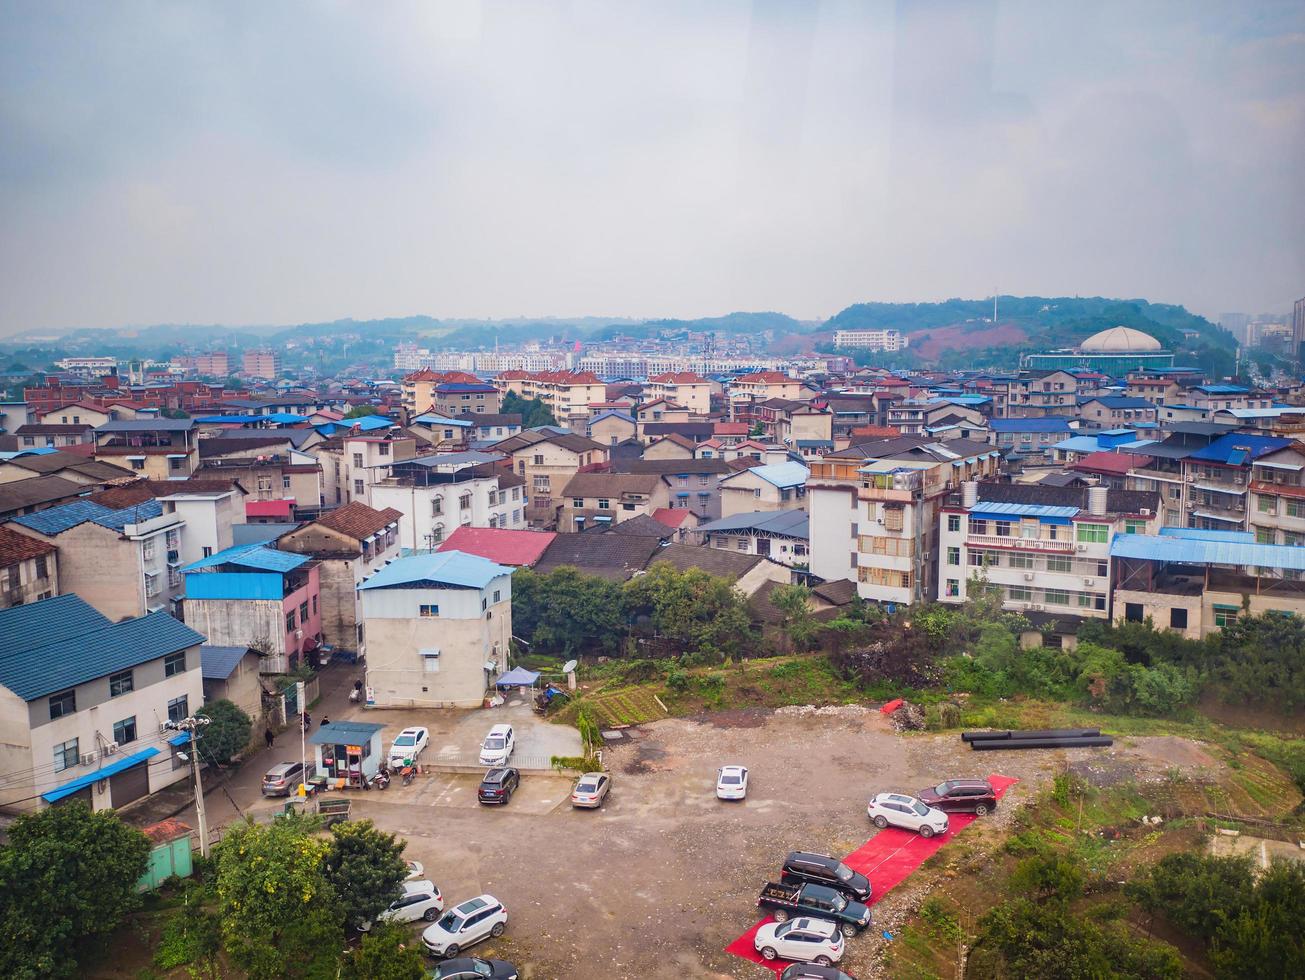 schöner zhangjiajie-stadtbildblick von der seilbahn zum tianmen-berg am morgen. städtische gebäudeszene in der innenstadt der stadt zhangjiajie hunan china foto